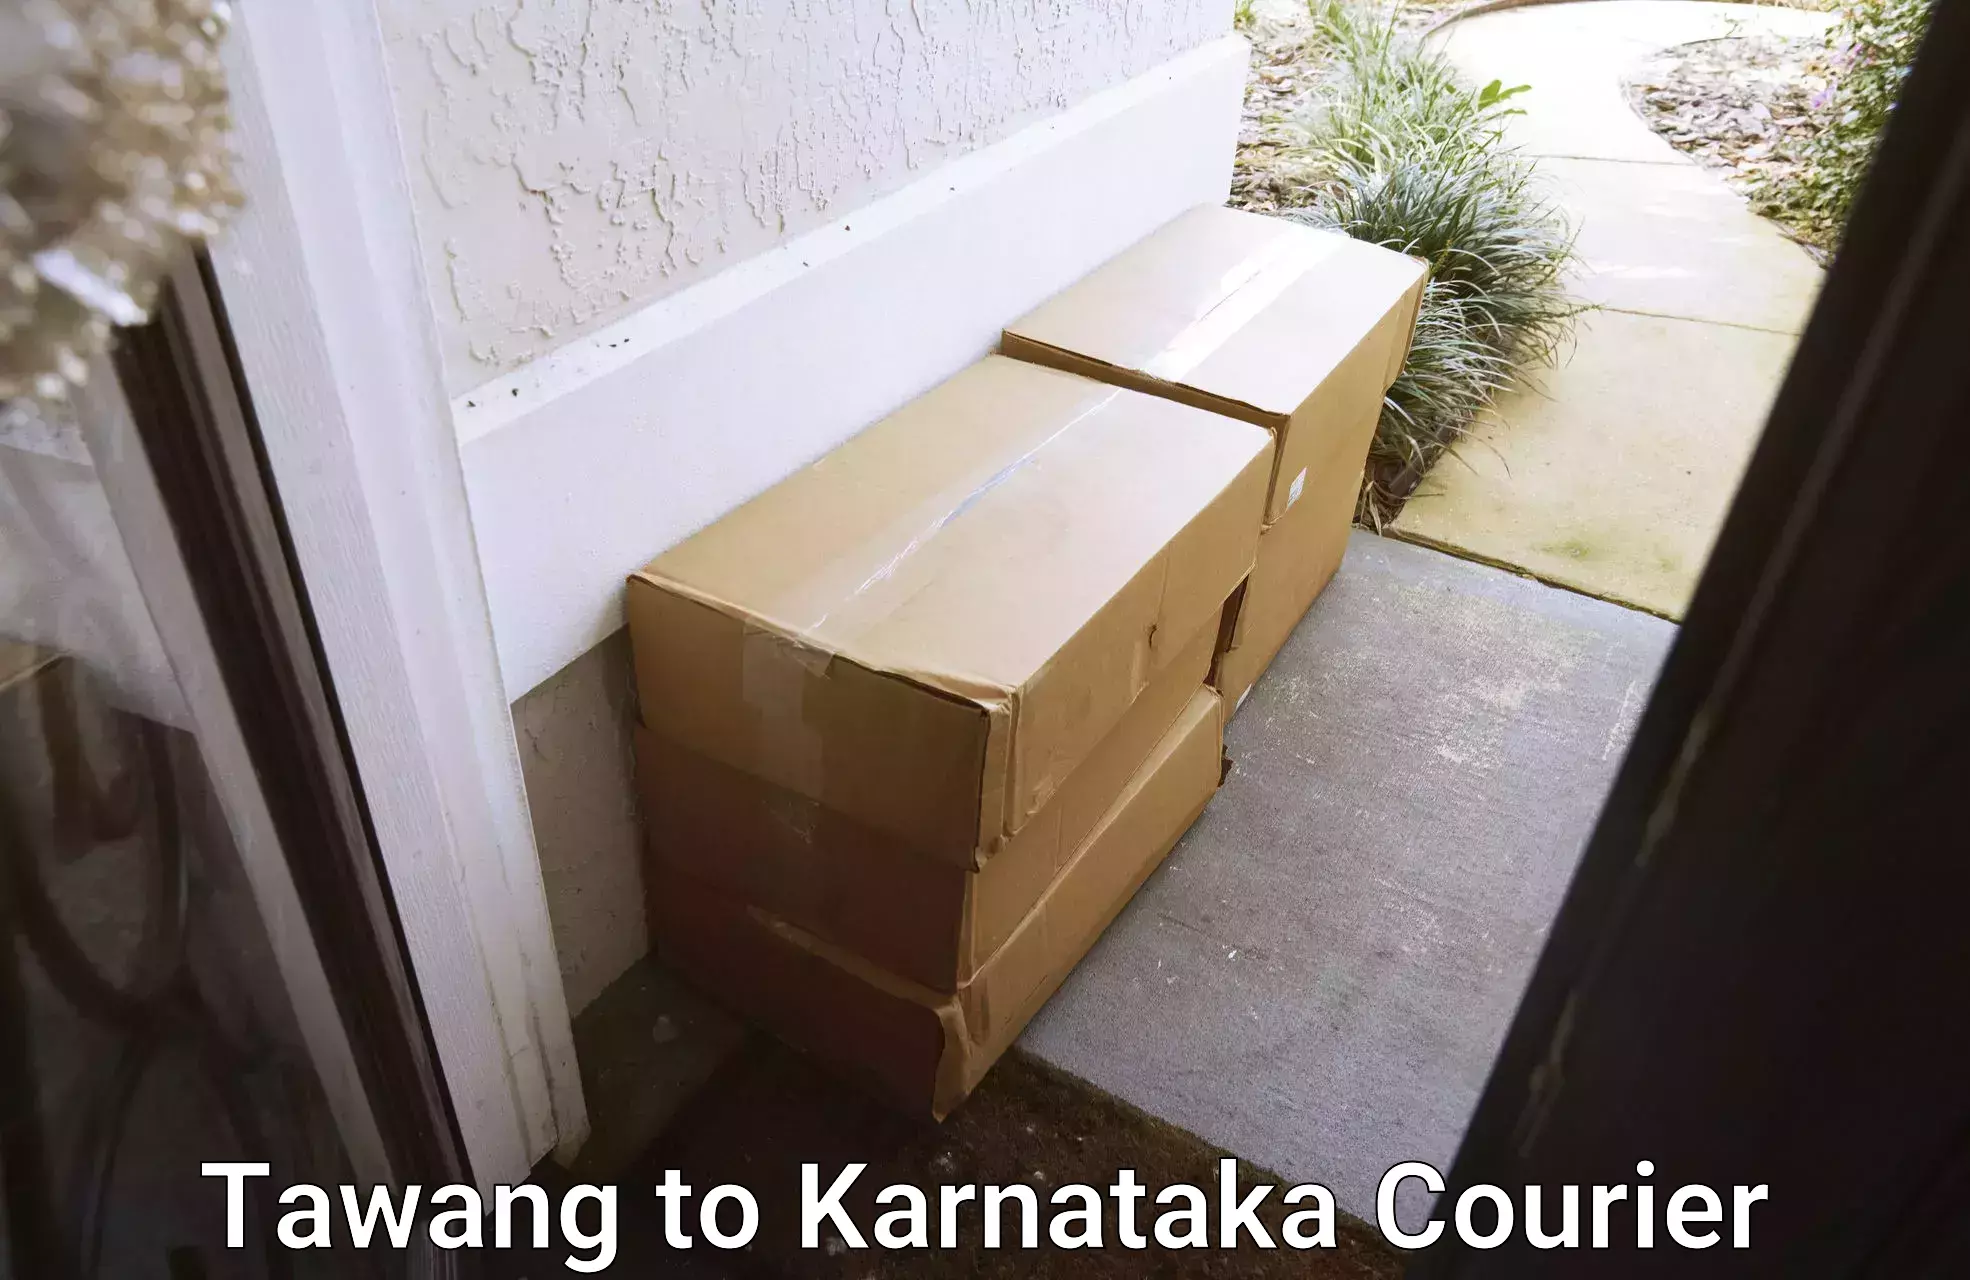 Efficient parcel delivery Tawang to Karnataka